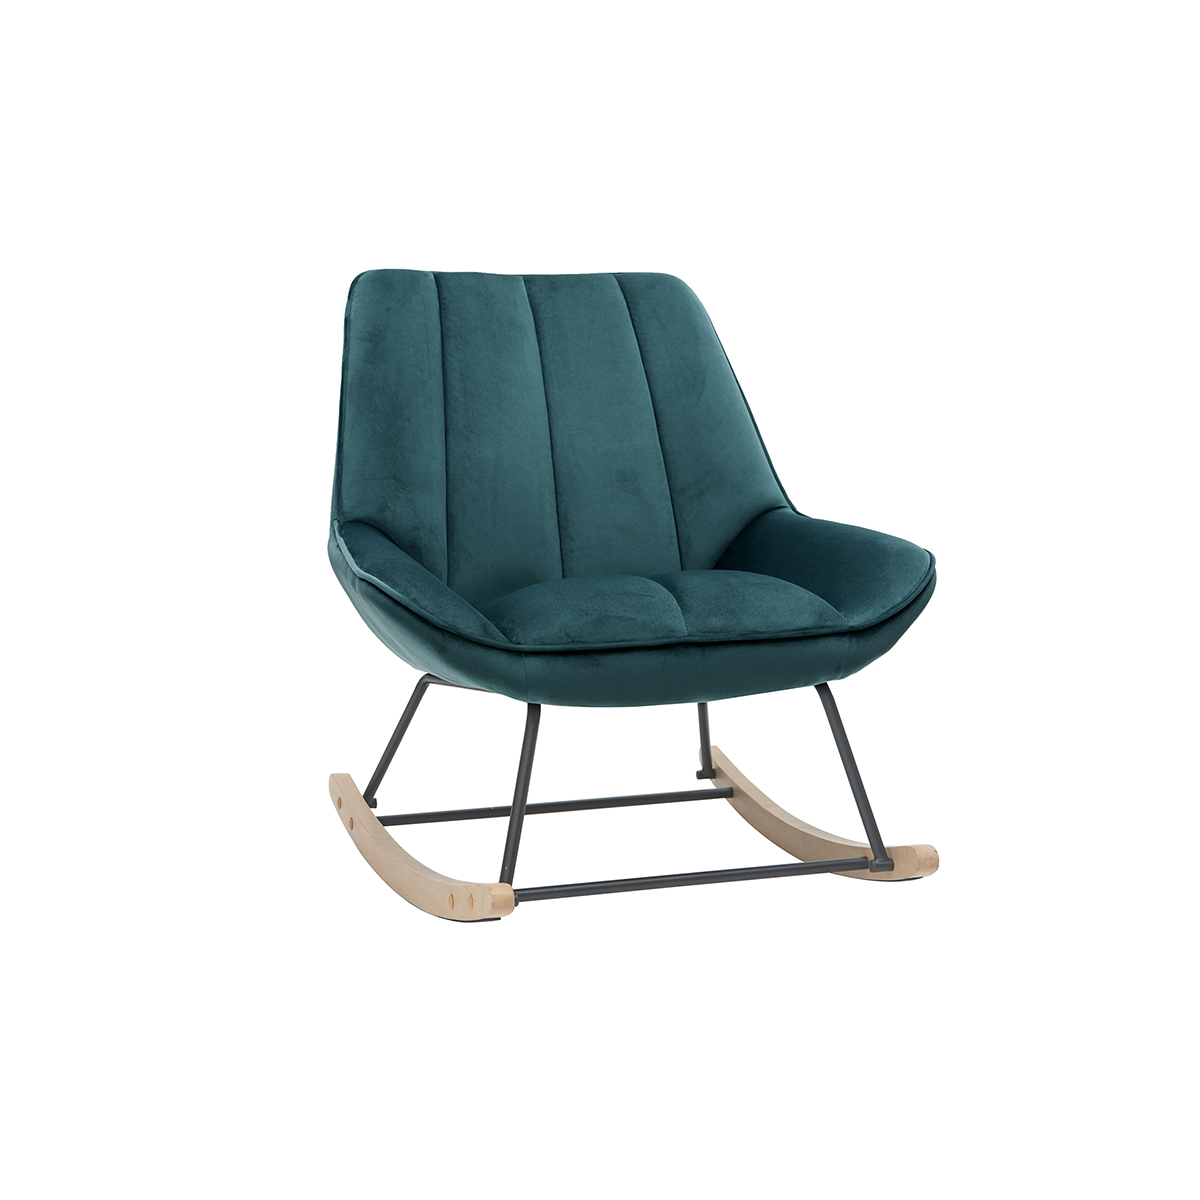 Rocking chair design en tissu velours bleu pétrole, métal noir et bois clair BILLIE vue1